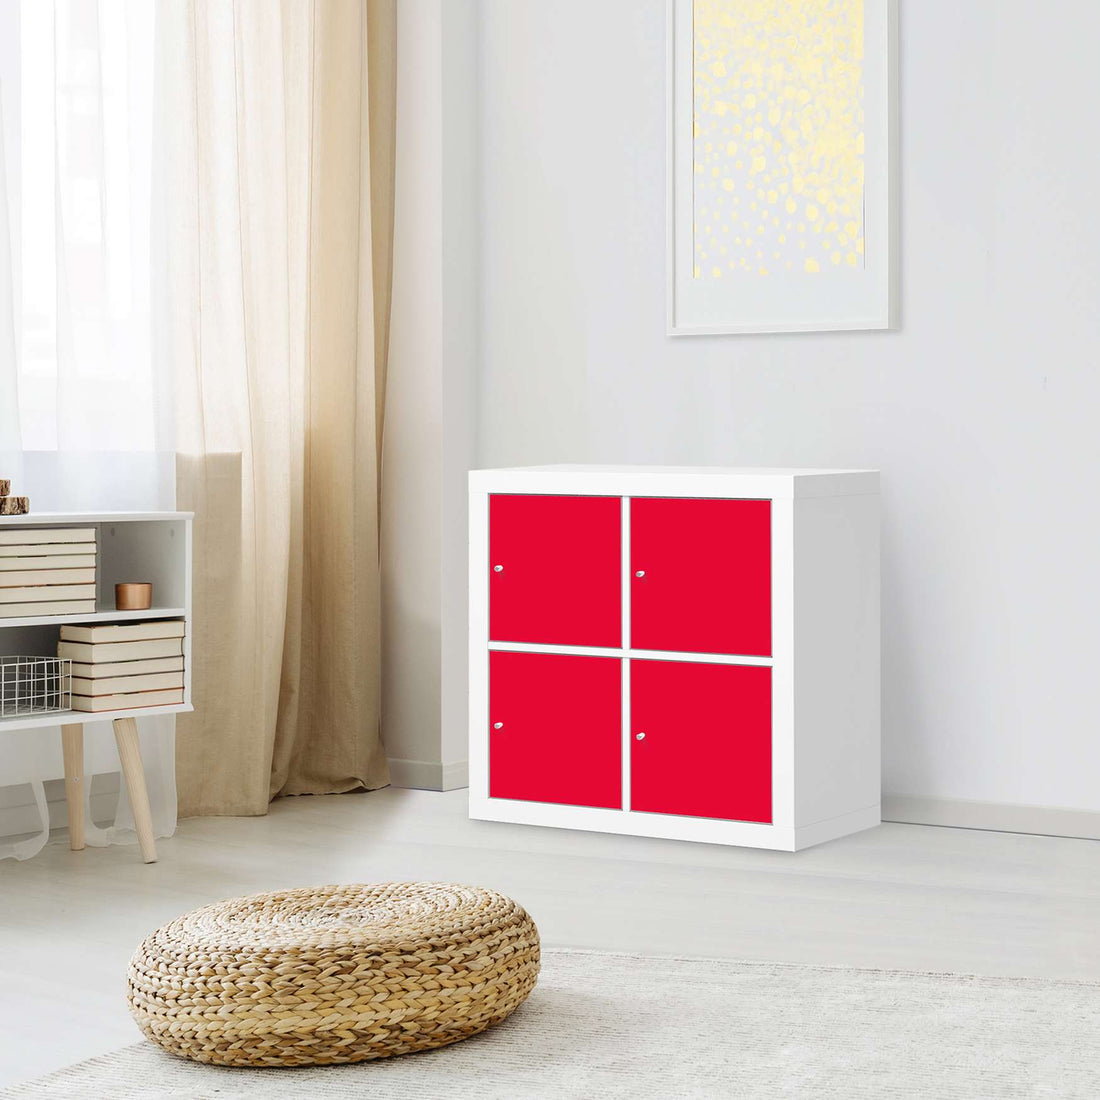 Klebefolie für Möbel Rot Light - IKEA Kallax Regal 4 Türen - Wohnzimmer